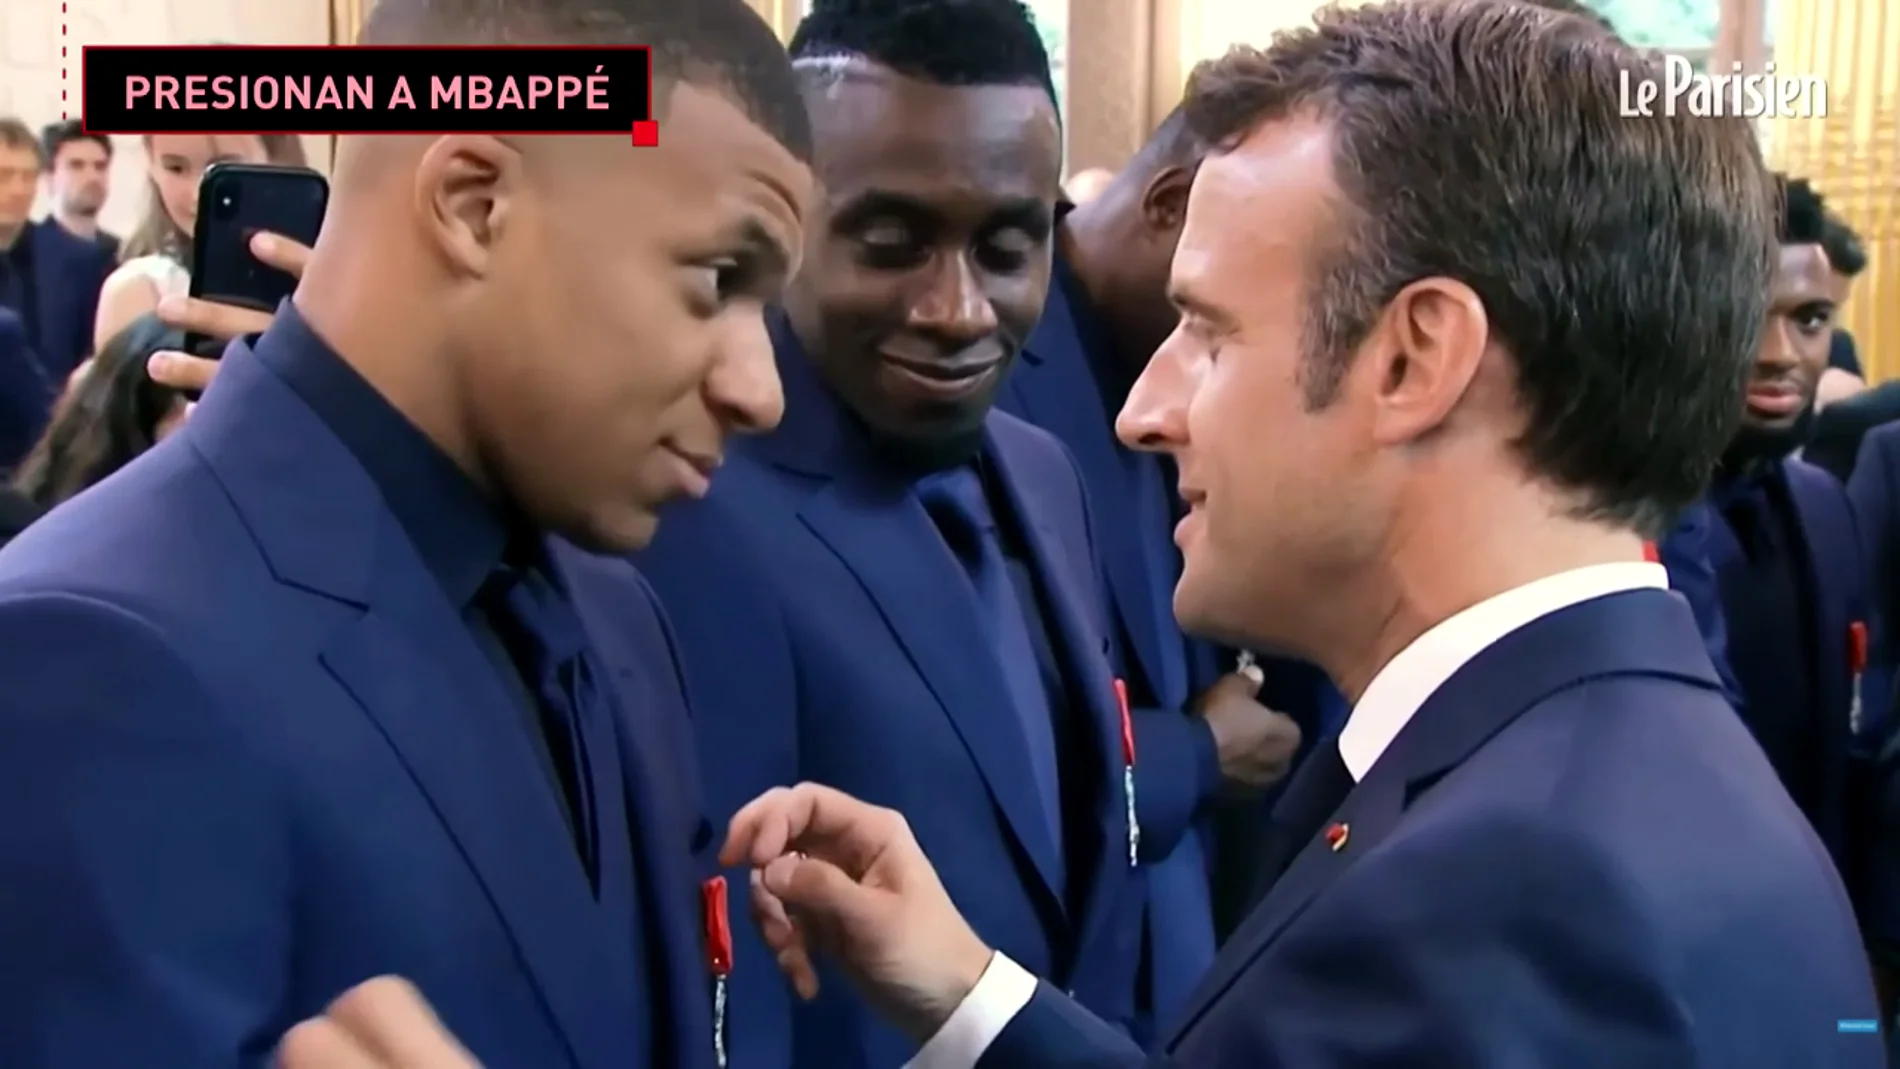 Acoso y derribo a Mbappé: oferta de más de un millón por semana, súplicas de Macron y Sarkozy...